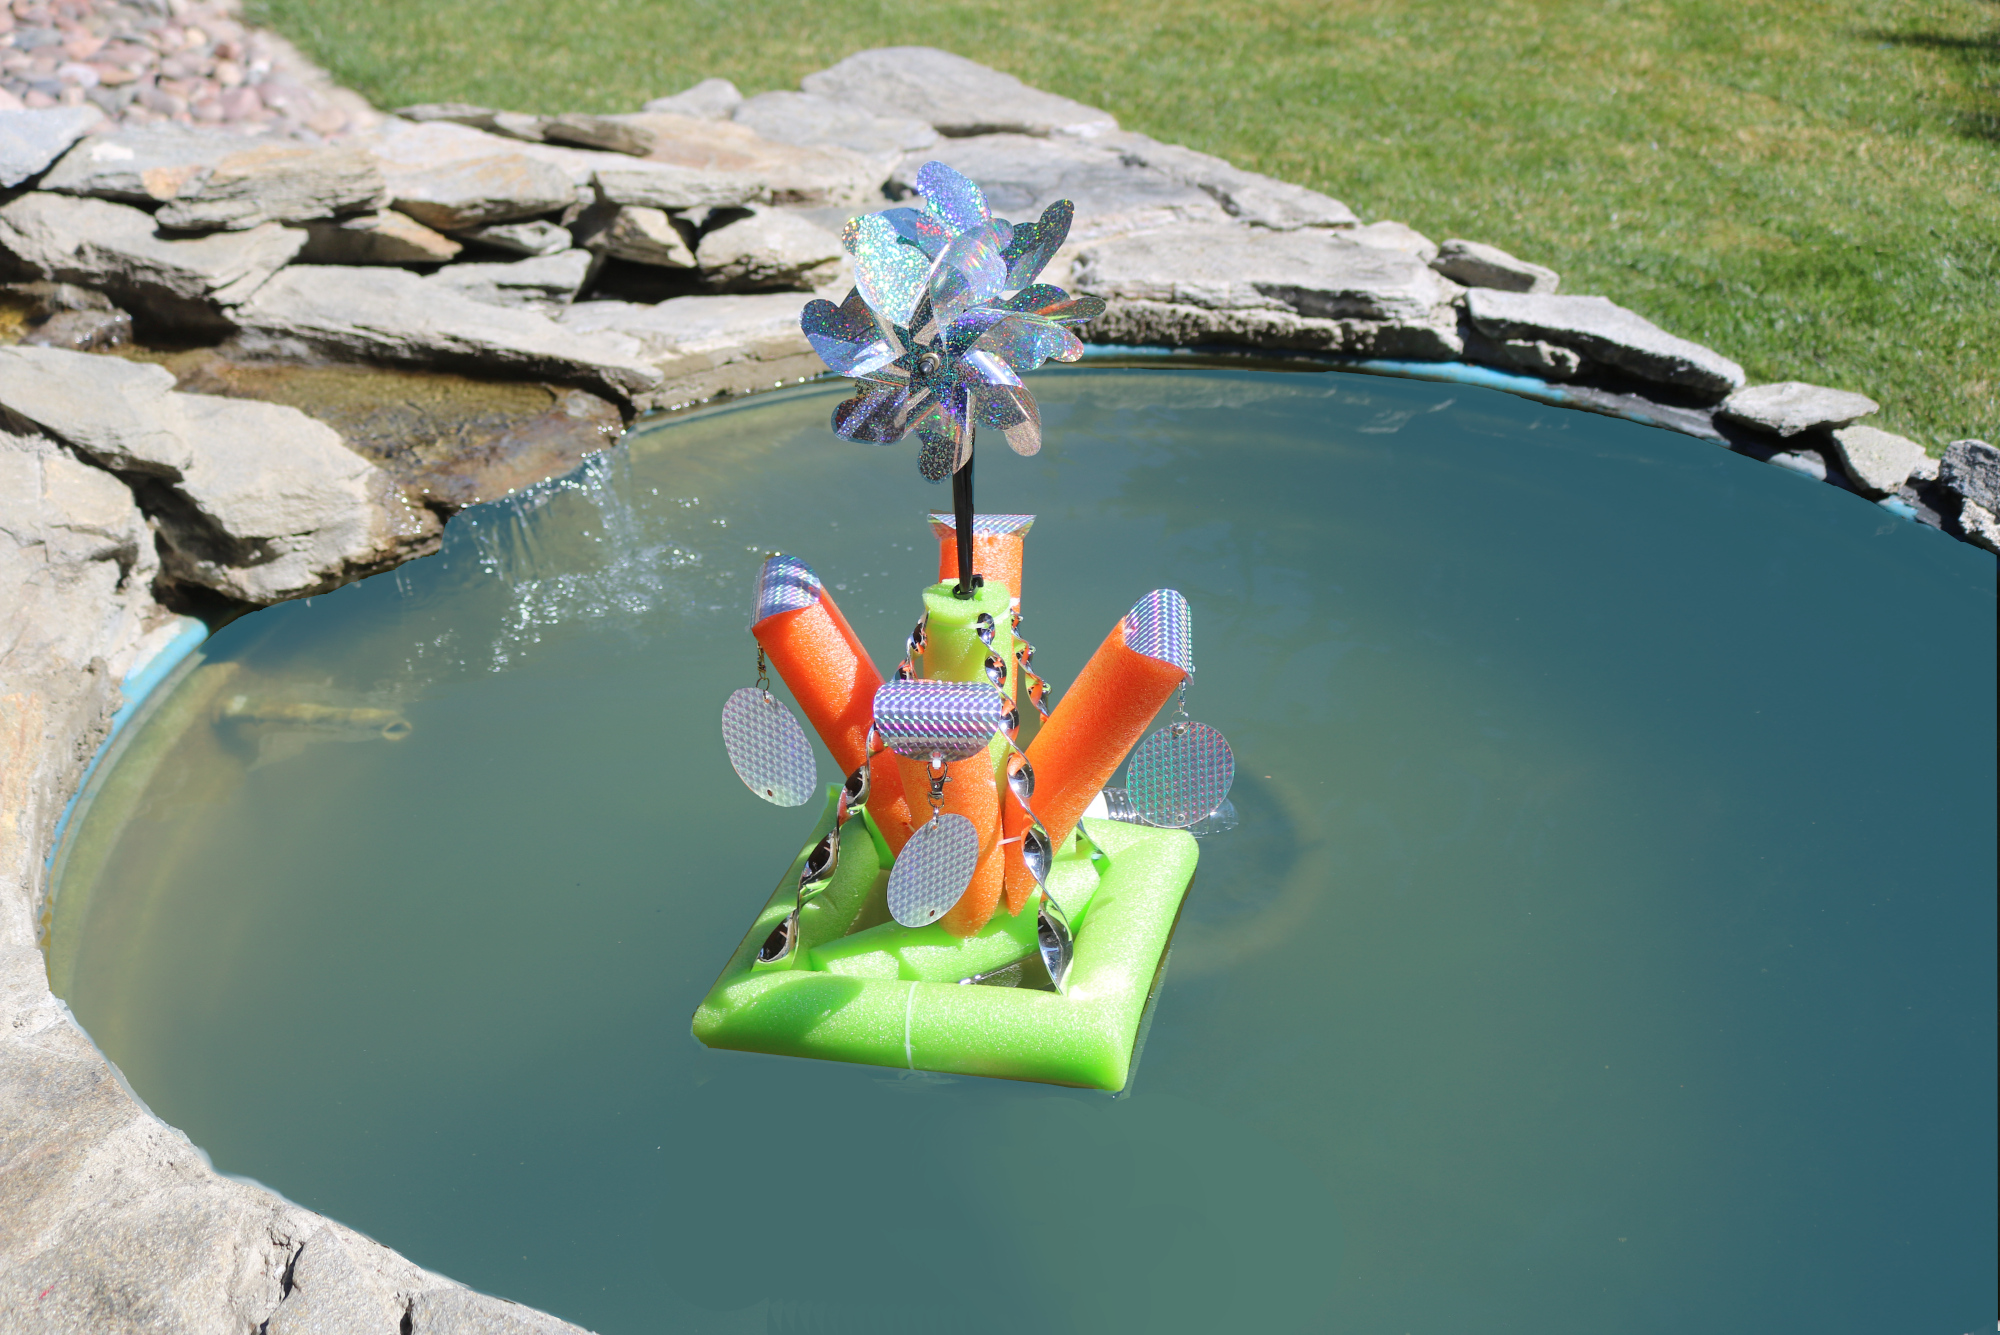 TBA Pool Floaty